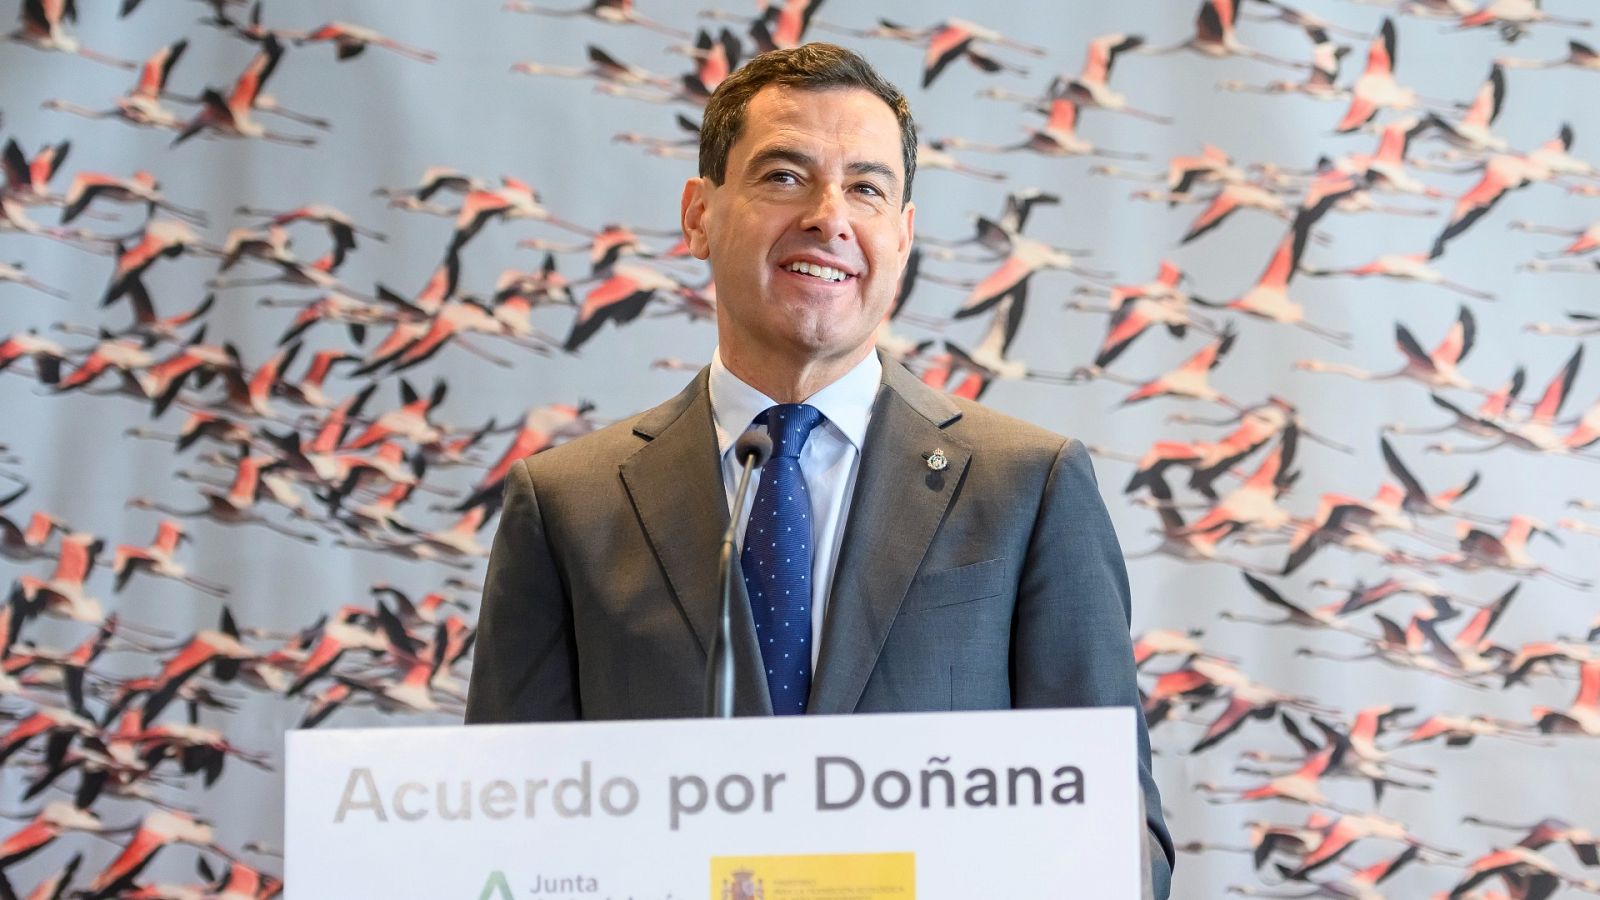 Moreno sobre el acuerdo de Doñana: "Posibilita el desarrollo económico de la zona"